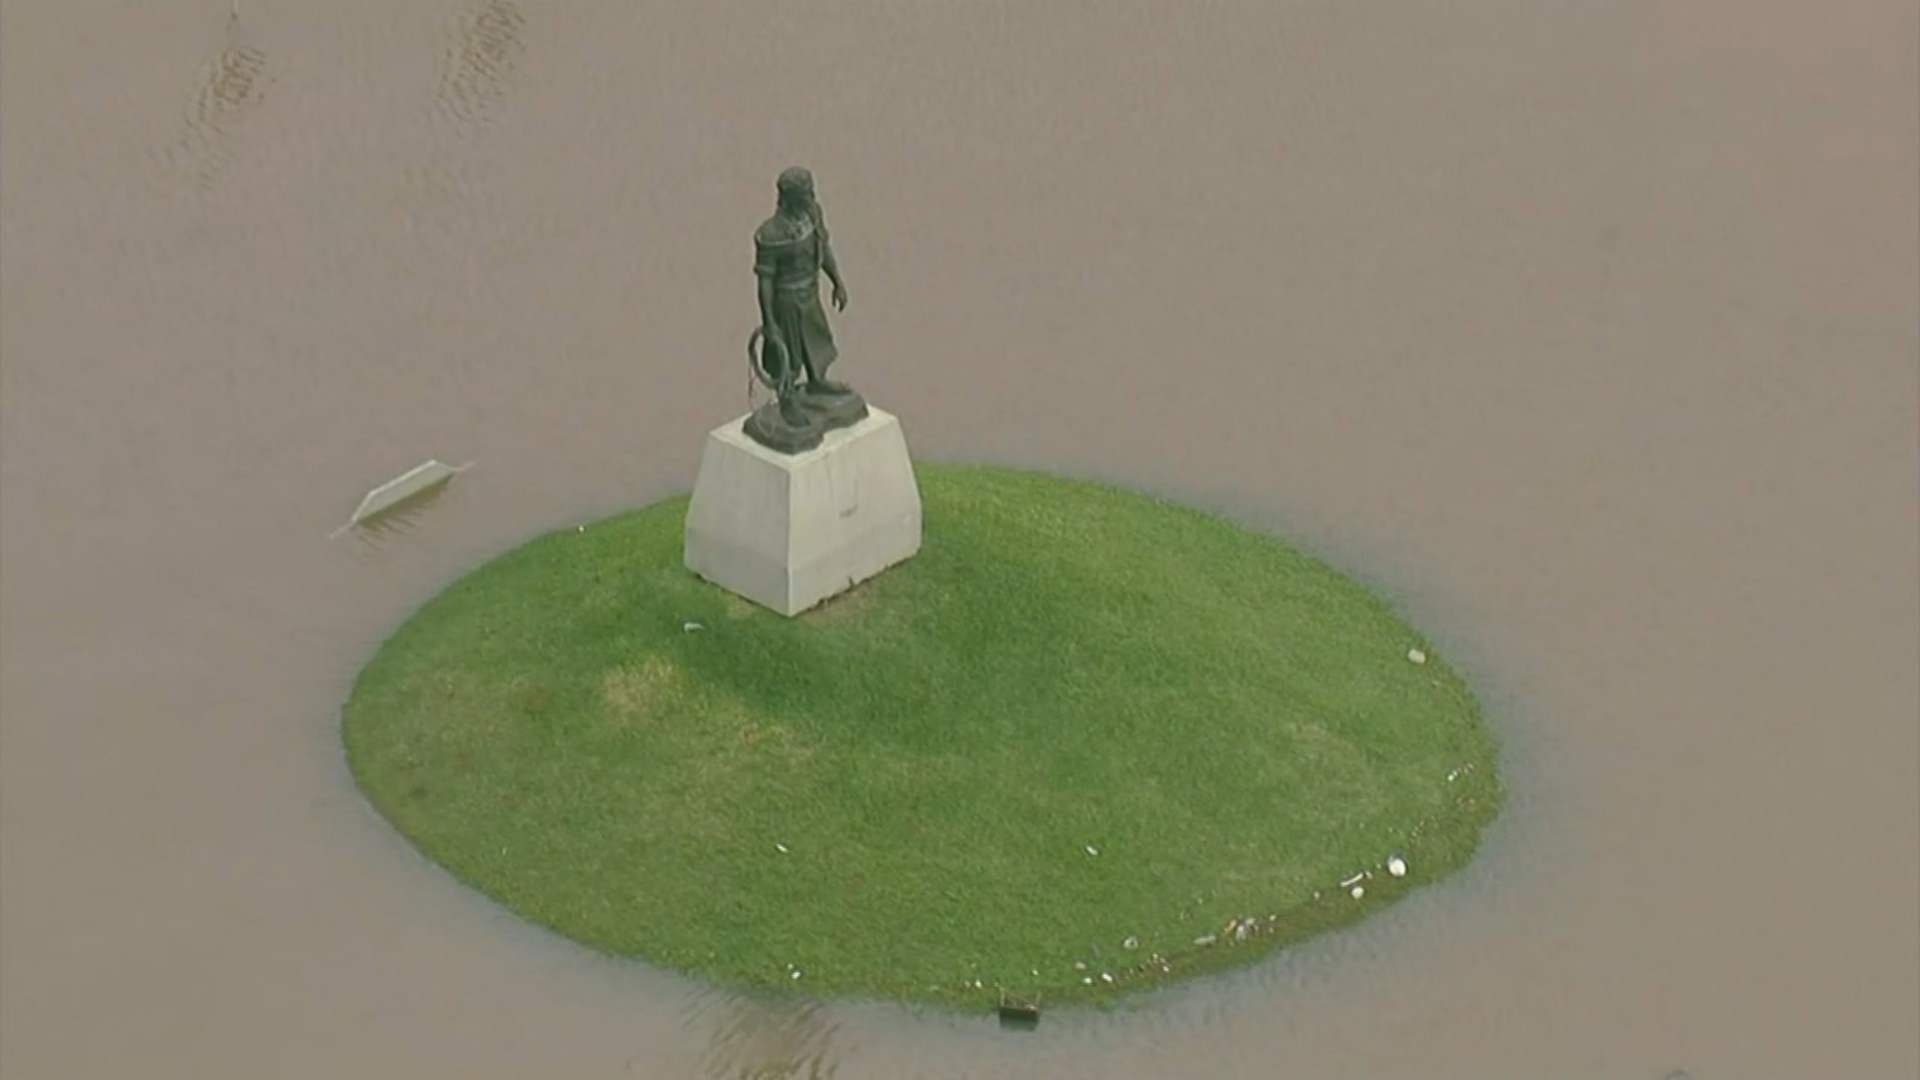 VÍDEO: Imagens aéreas mostram Laçador, monumento histórico de Porto Alegre, alagado após chuvas